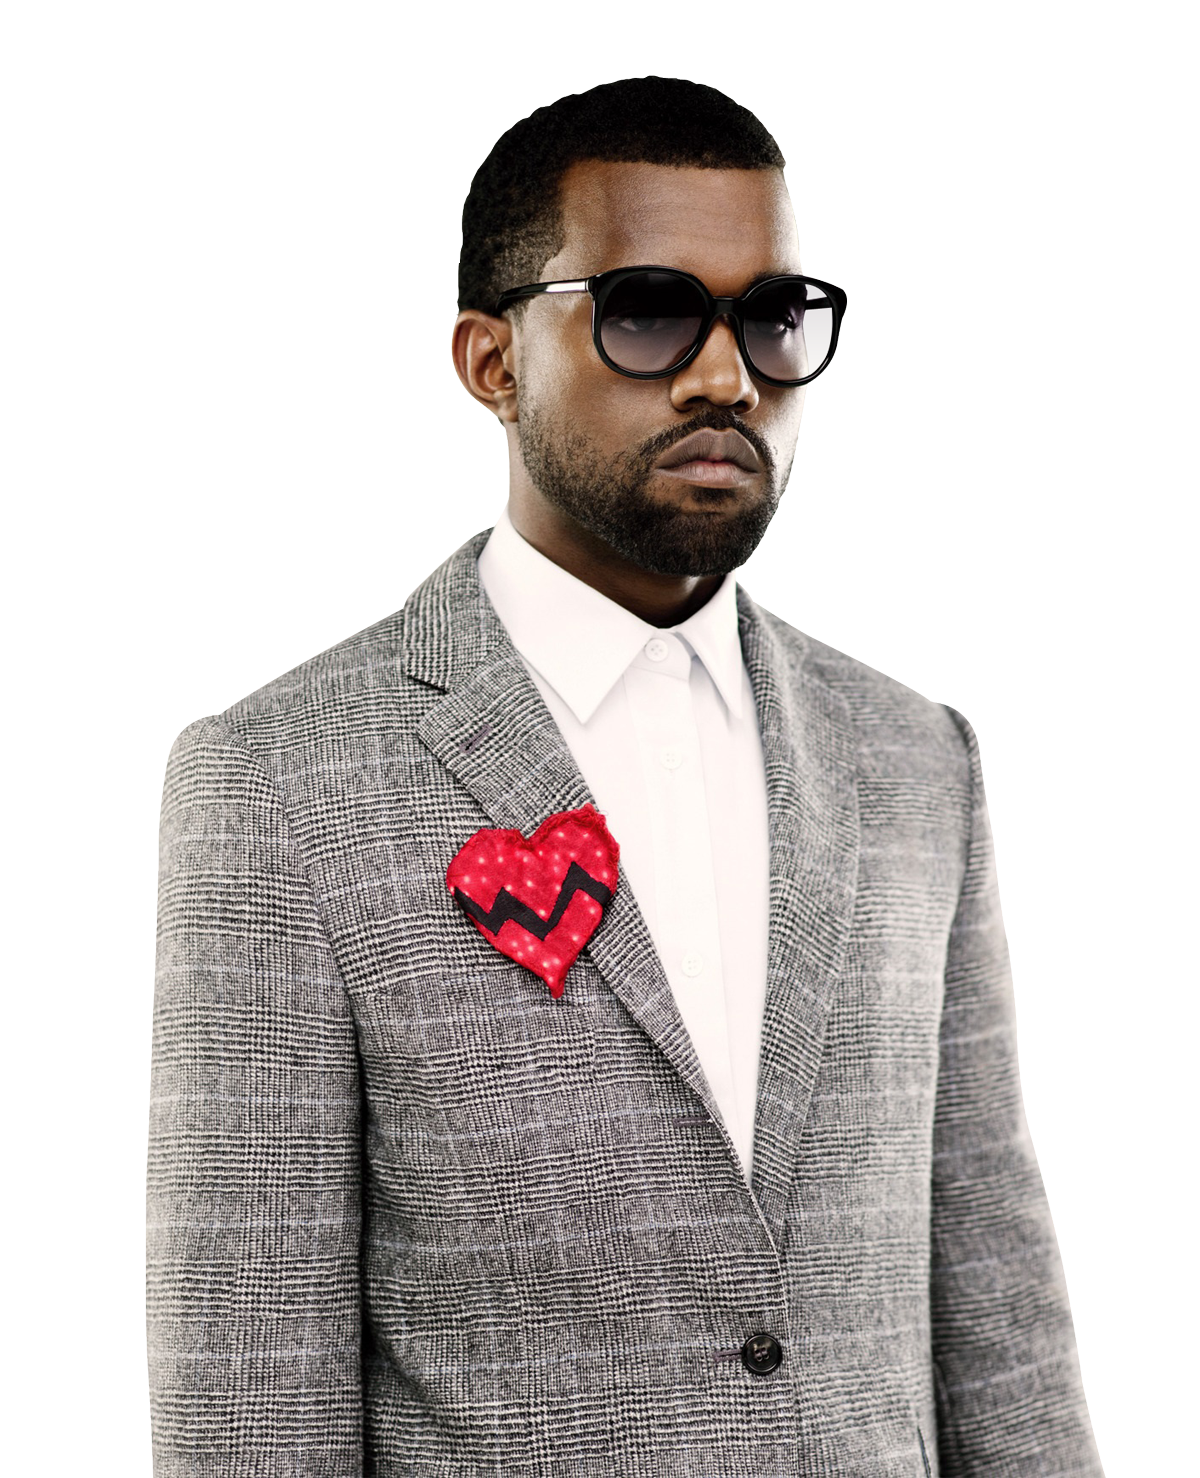 Download PNG image - Kanye West PNG Image 